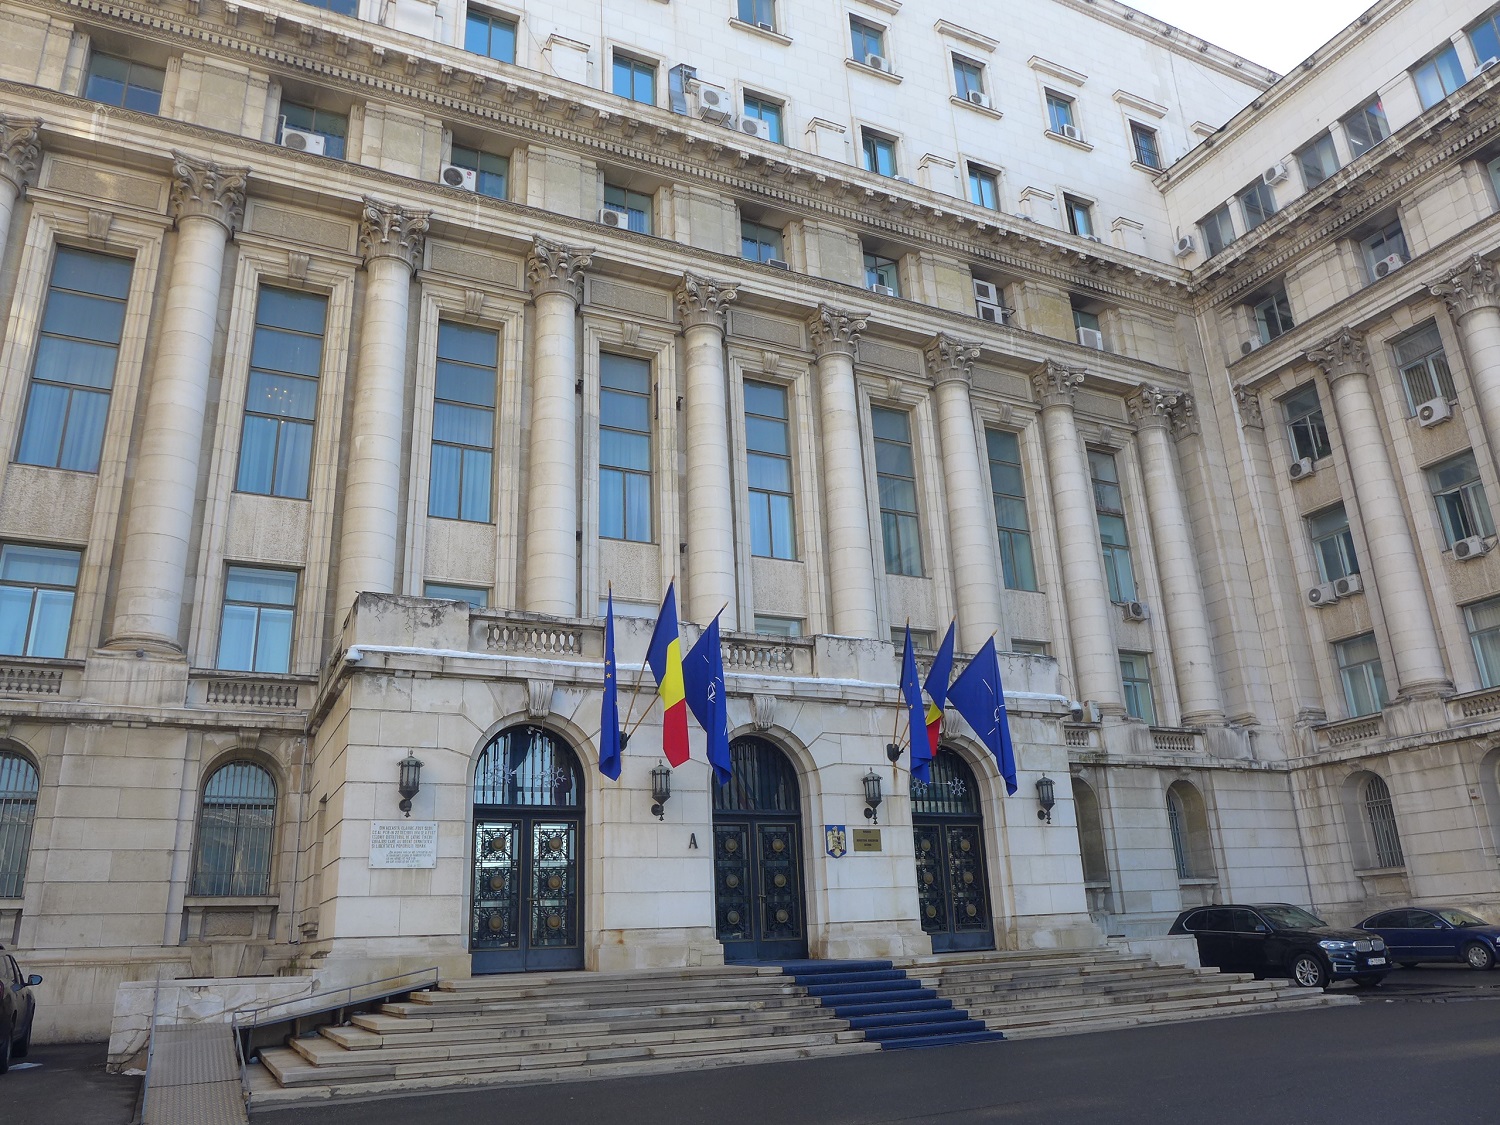 Le balcon duquel Ceaucescu a donné son dernier discours, le 21 décembre 1989. A l’époque, ce bâtiment était le siège du Parti communiste. Aujourd’hui, c’est le ministère de l’Intérieur.